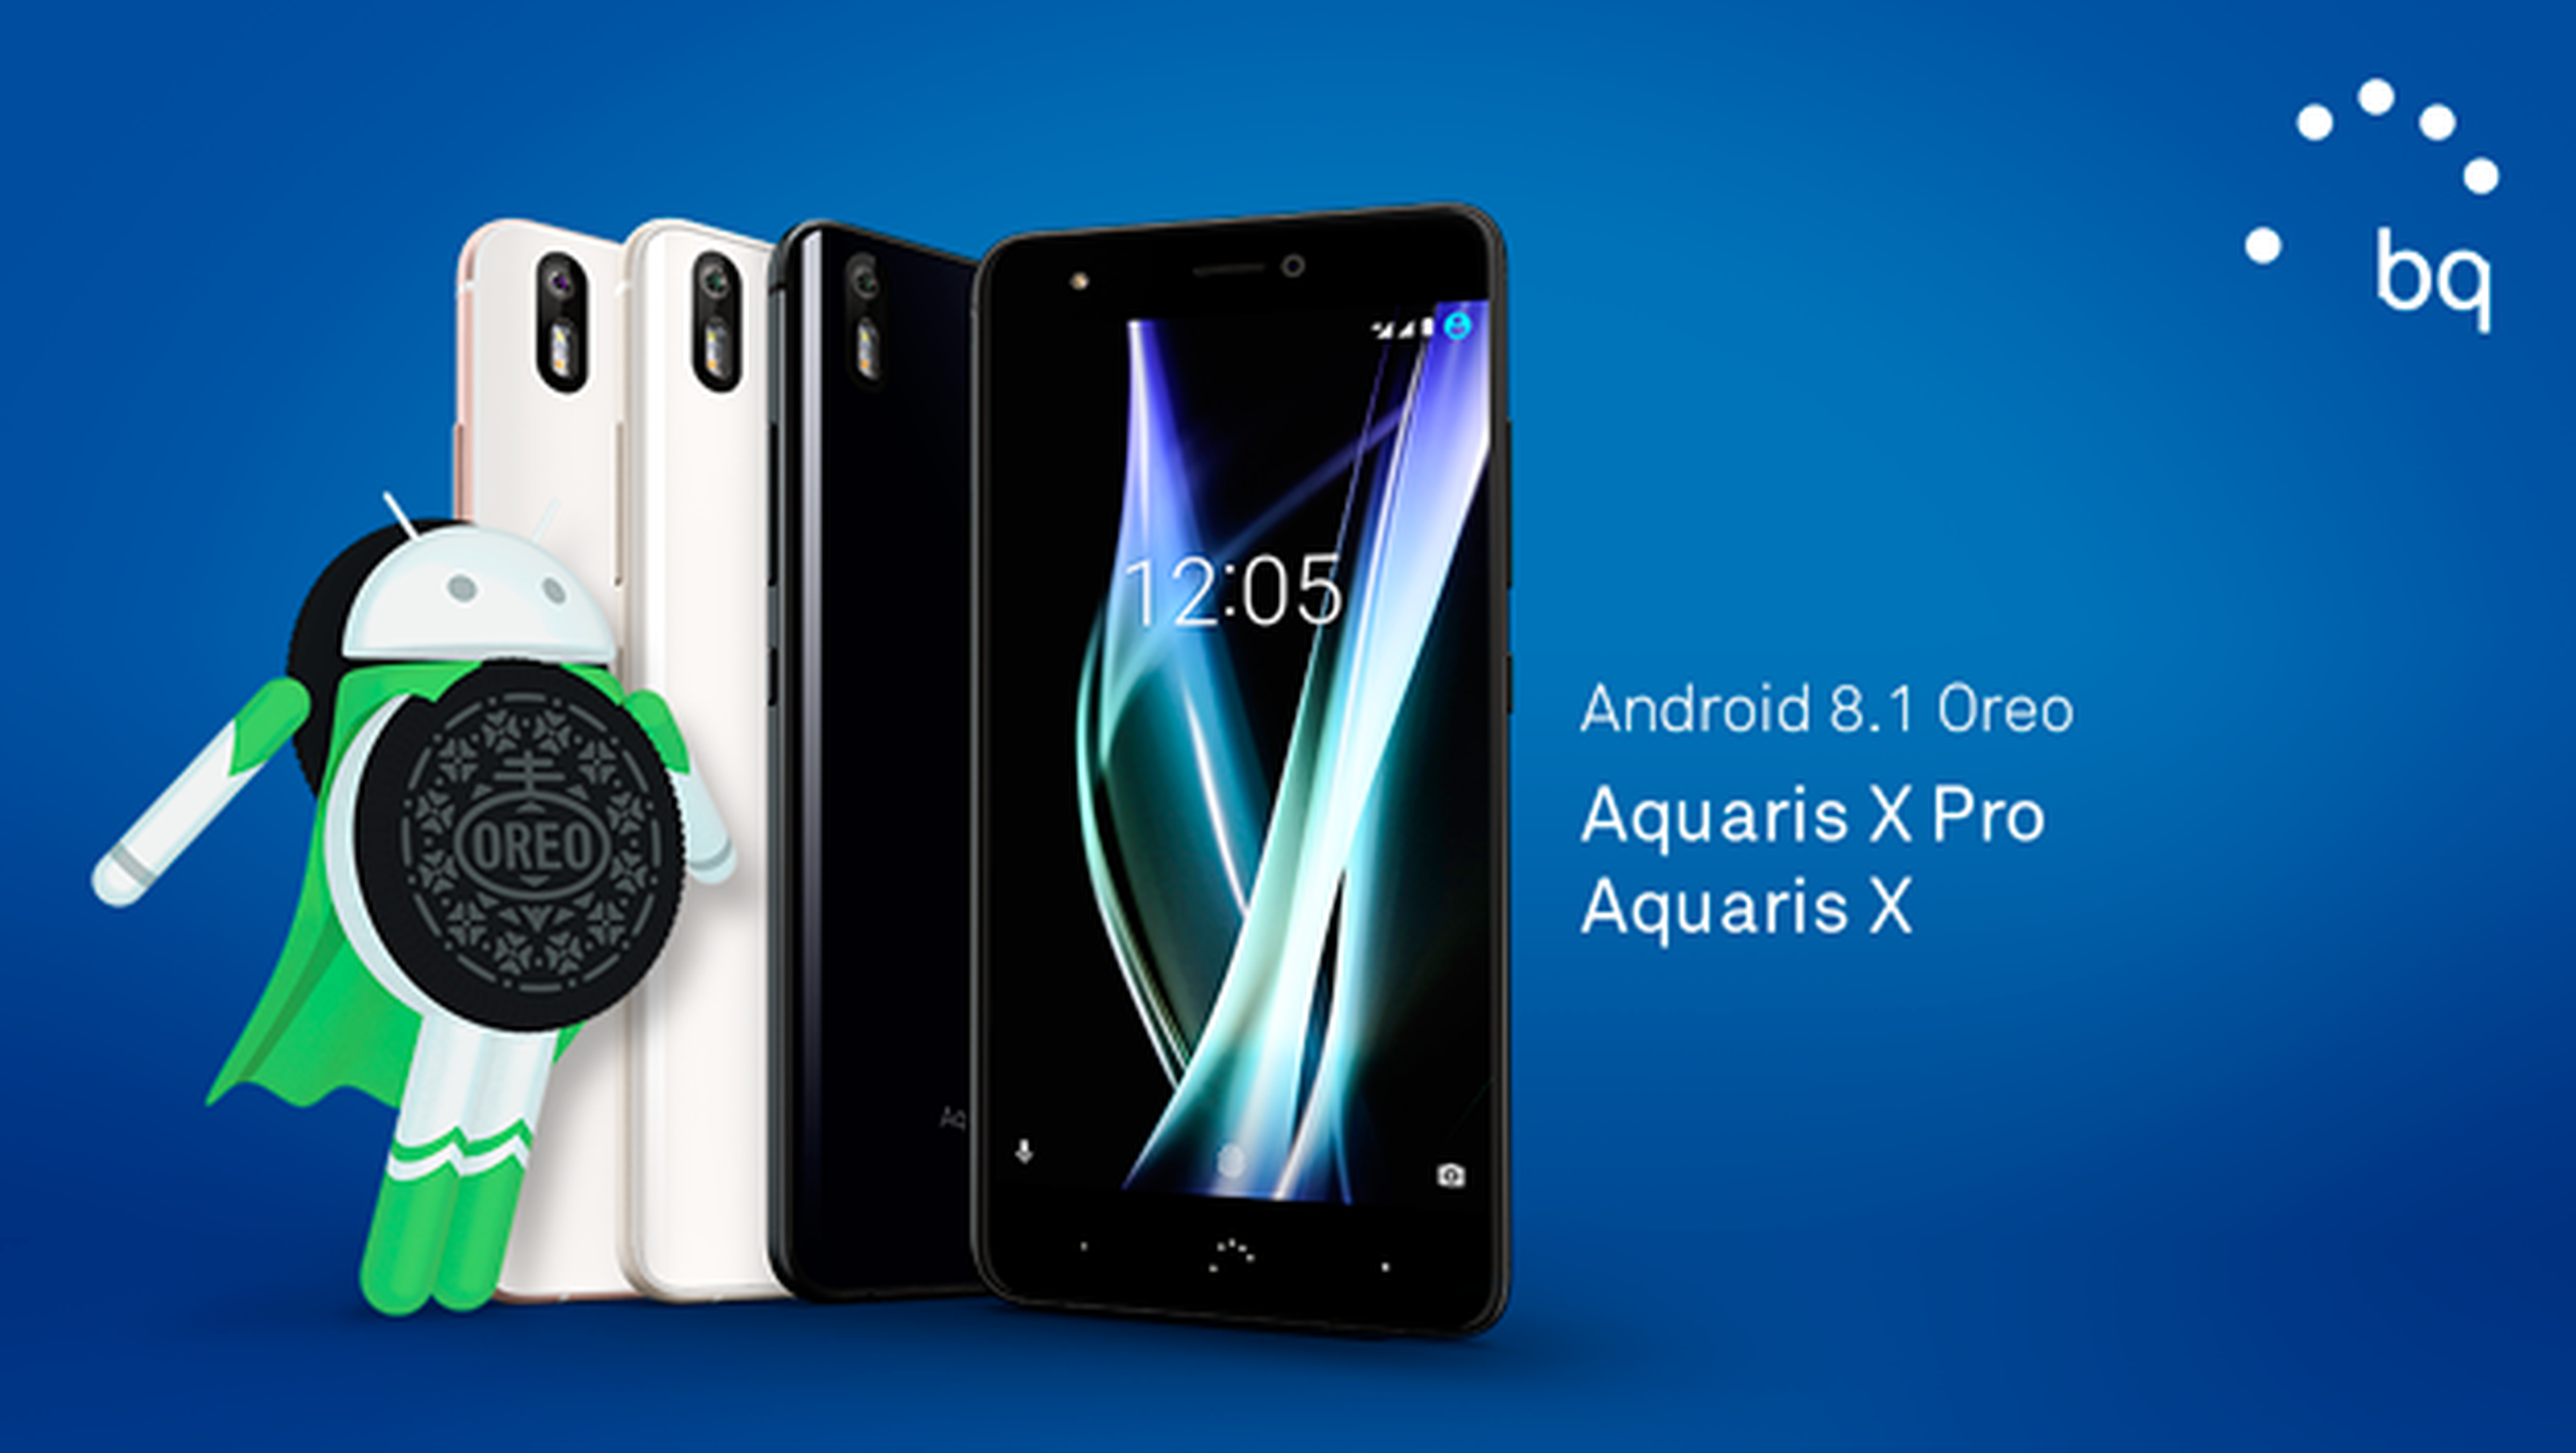 Los BQ Aquaris X y Aquaris X Pro reciben Android 8.1 Oreo